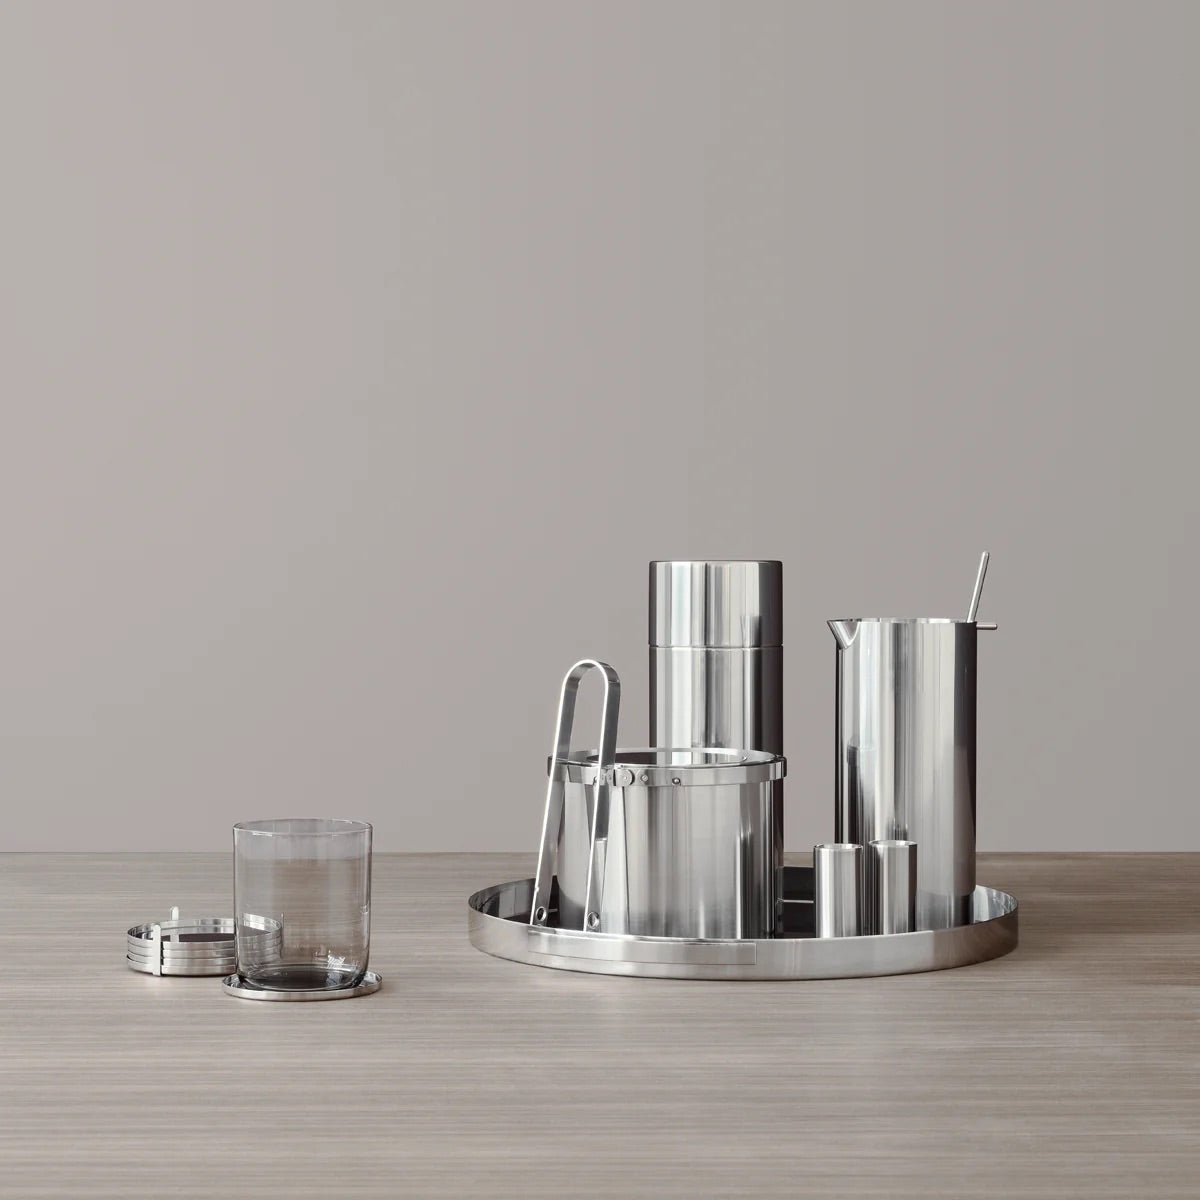 Stelton Arne Jacobsen Salt & Pepper Set